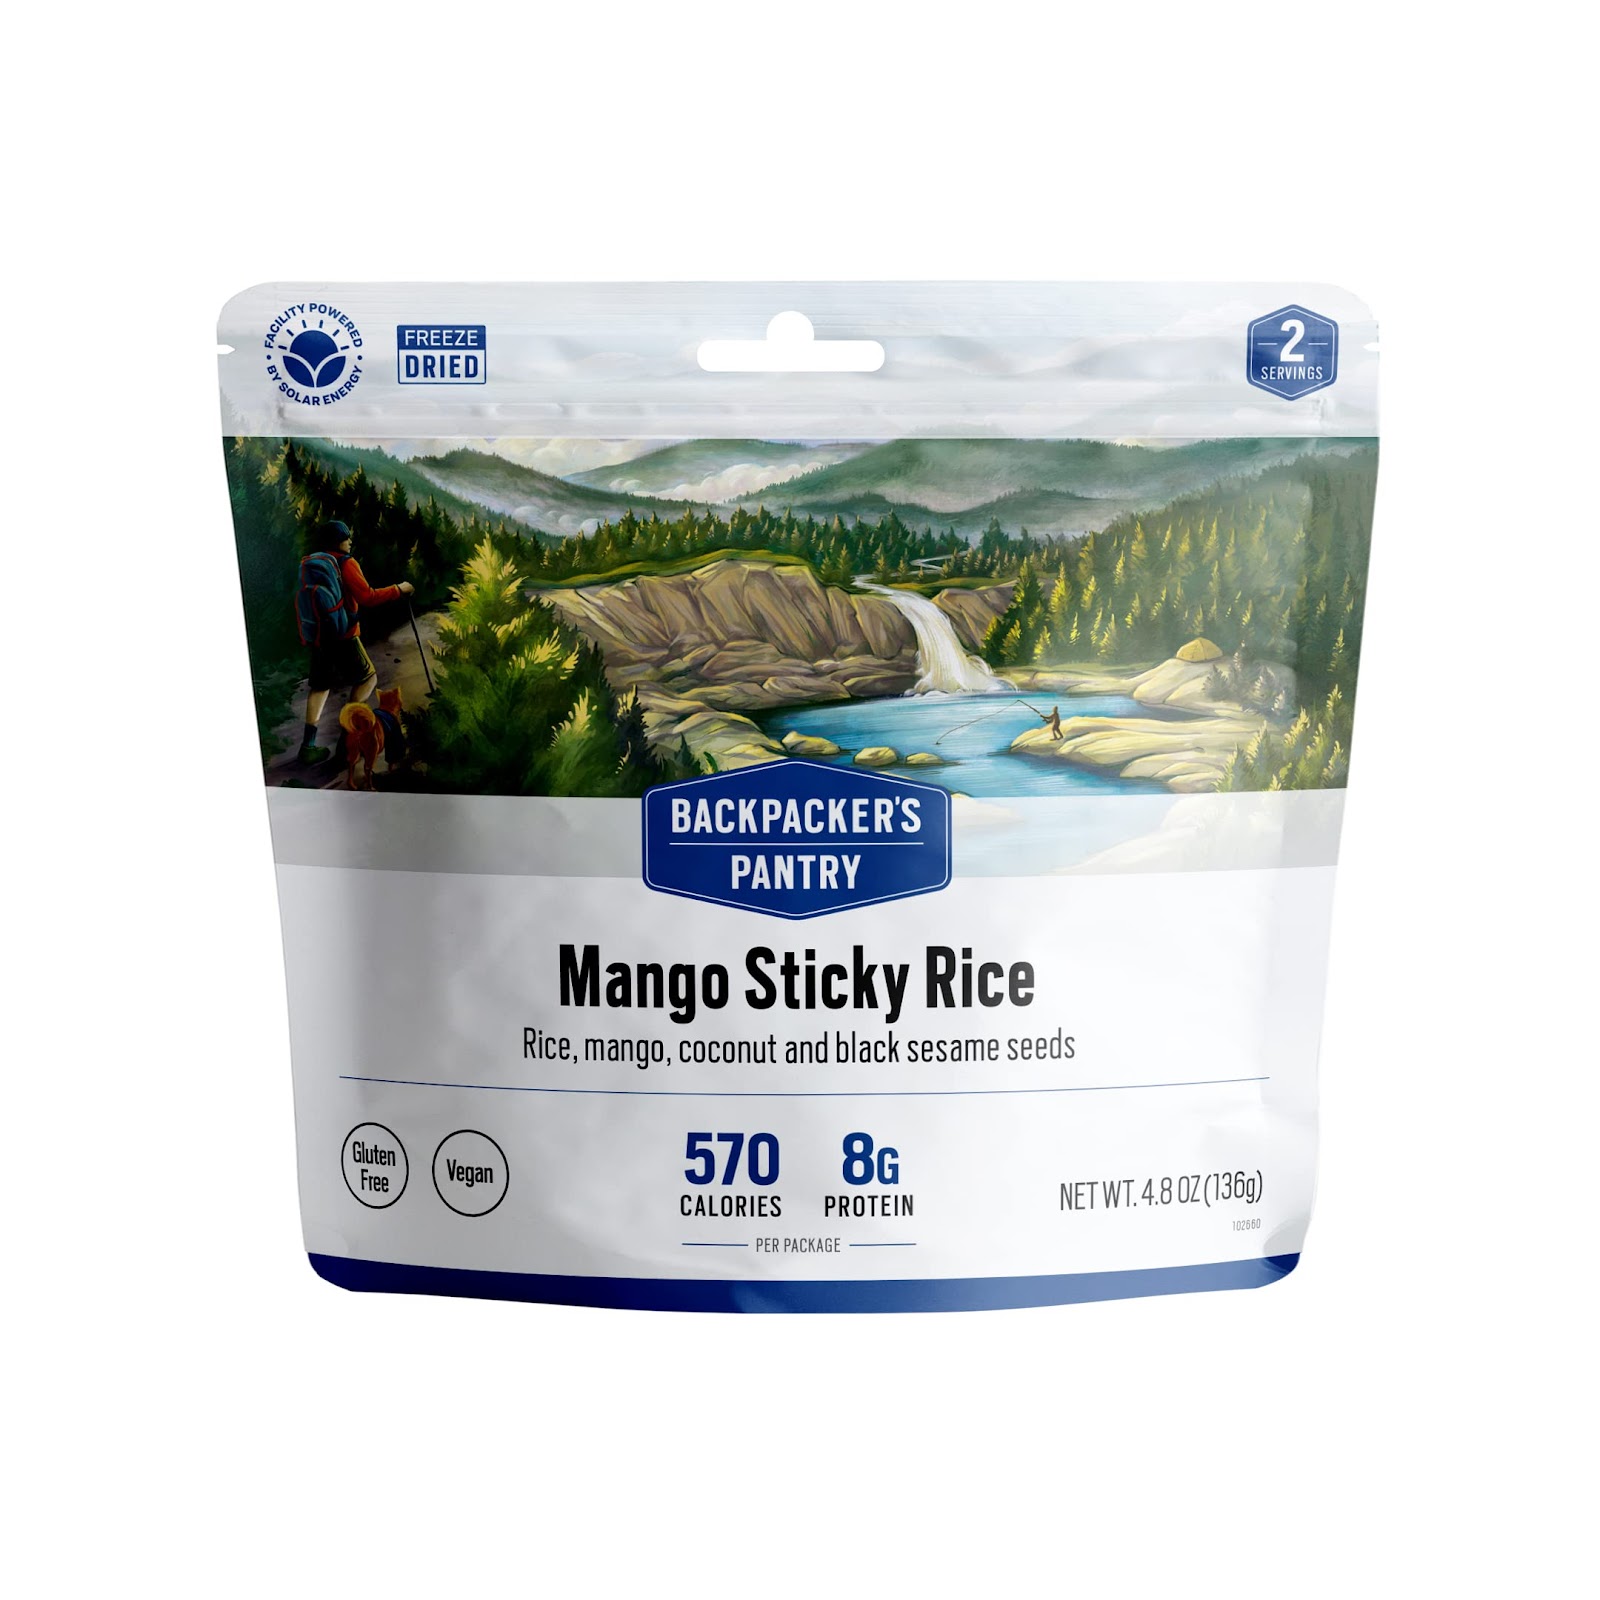 Backpacker's Pantry Mango Sticky Rice